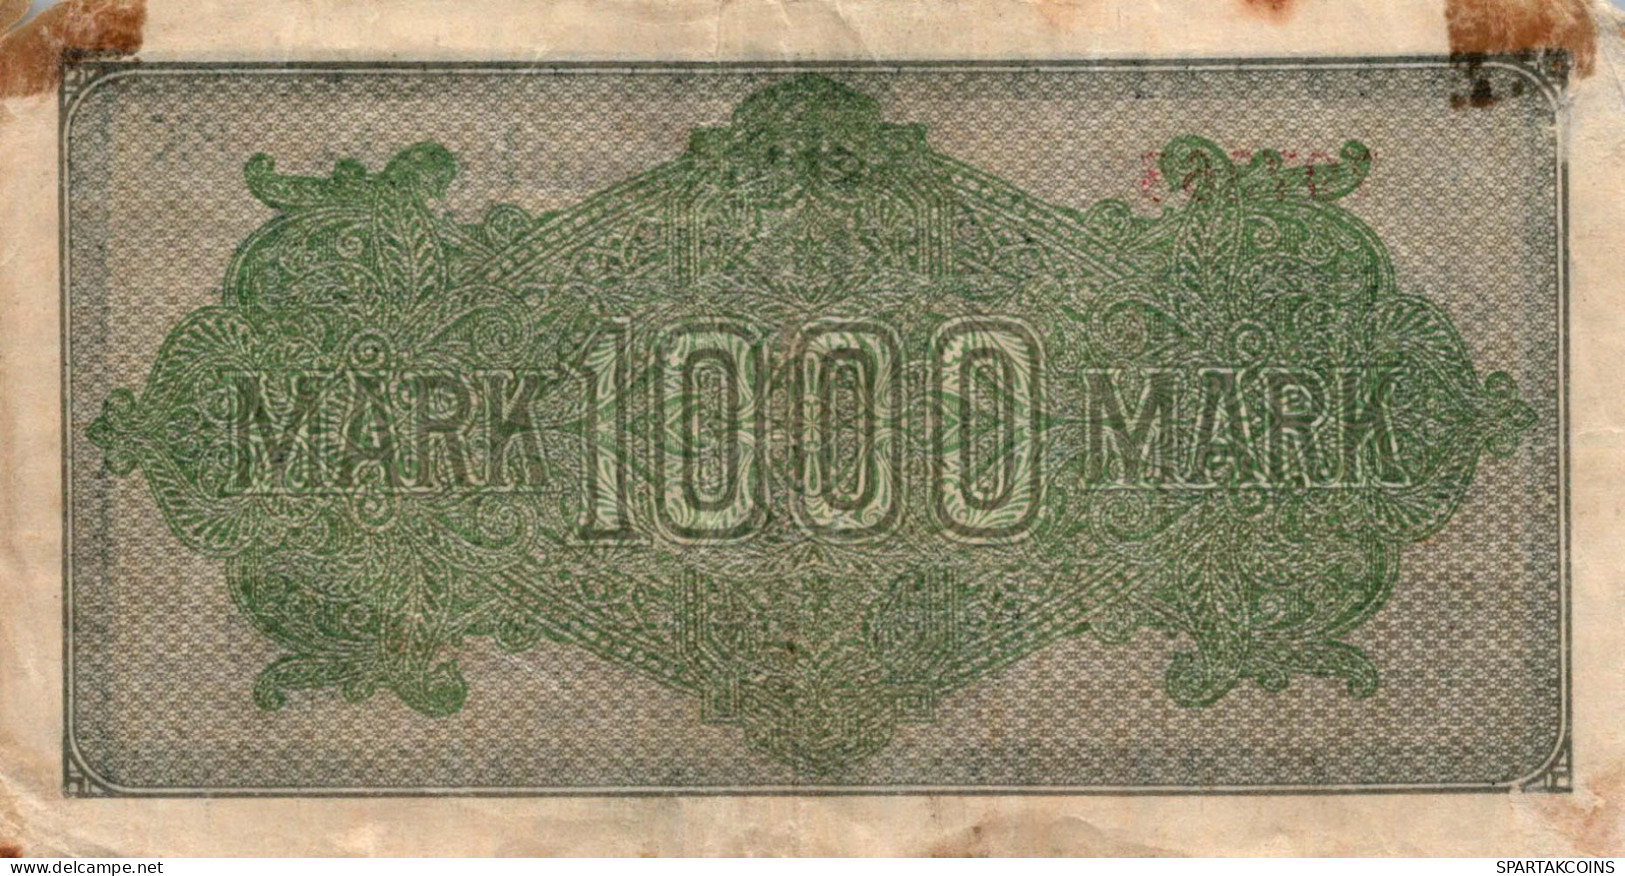 1000 MARK 1922 Stadt BERLIN DEUTSCHLAND Papiergeld Banknote #PL040 - Lokale Ausgaben